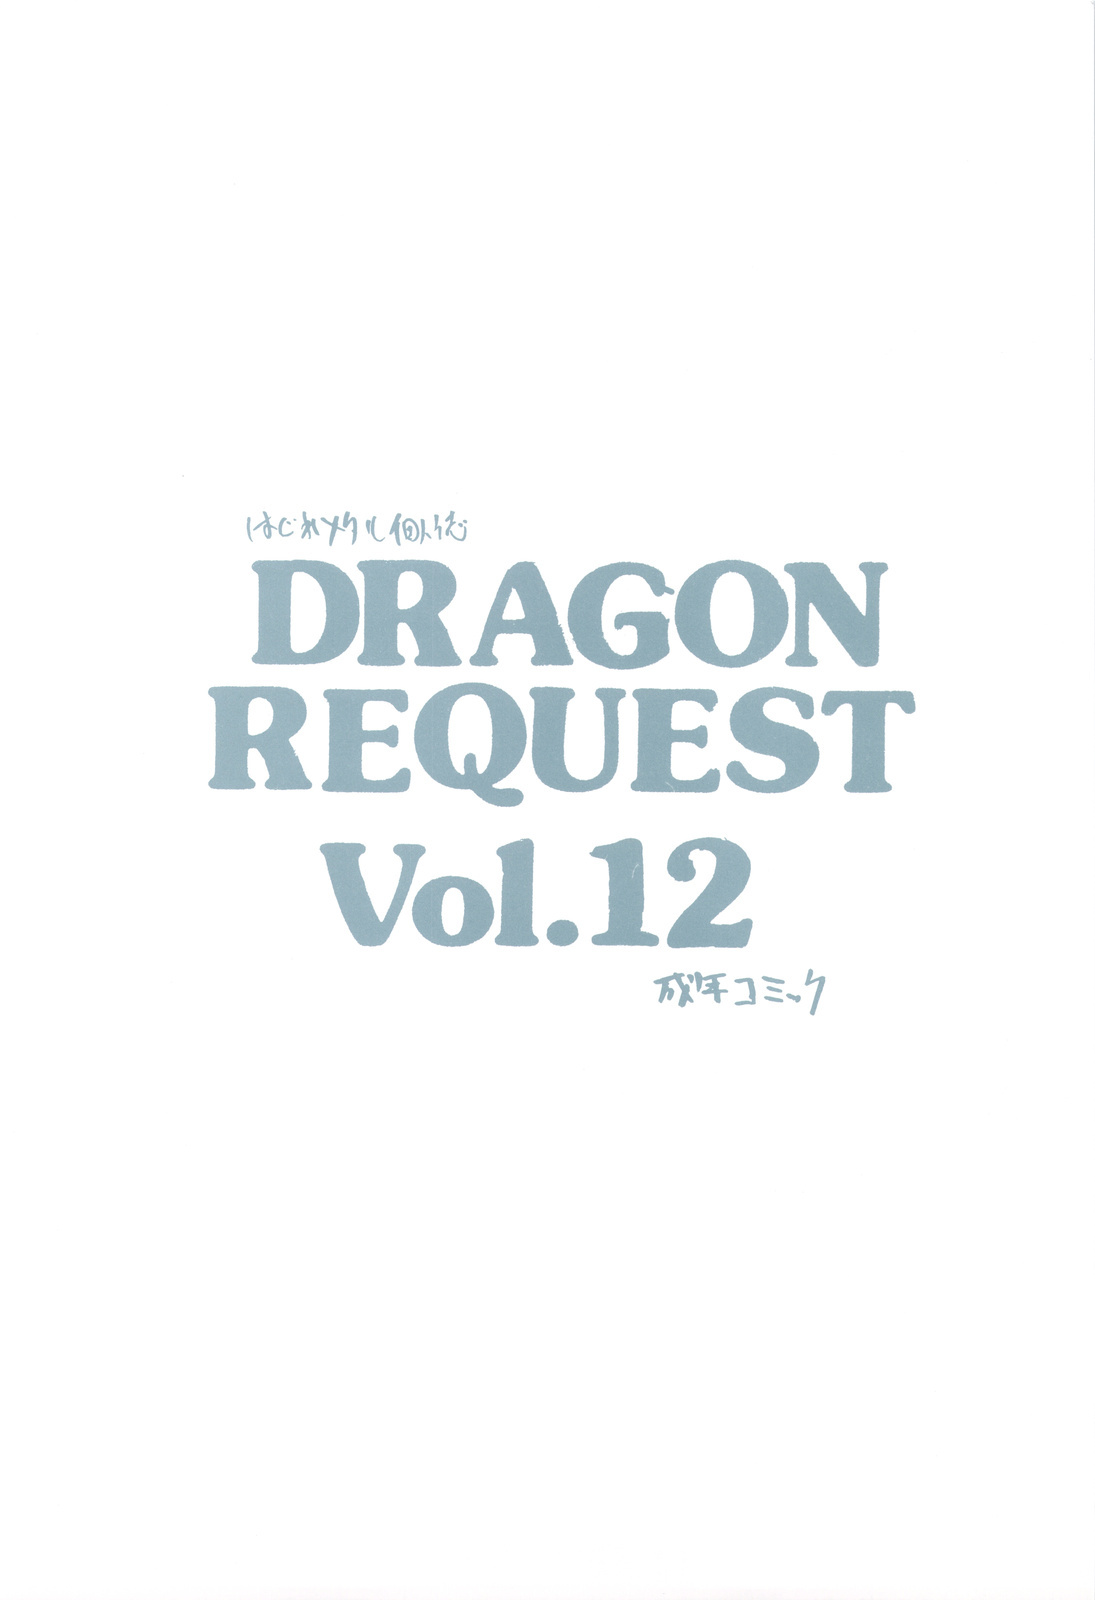 (Mimiket 20) [ZINZIN (Hagure Metal)] DRAGON REQUEST Vol. 12 (Dragon Quest V) page 20 full